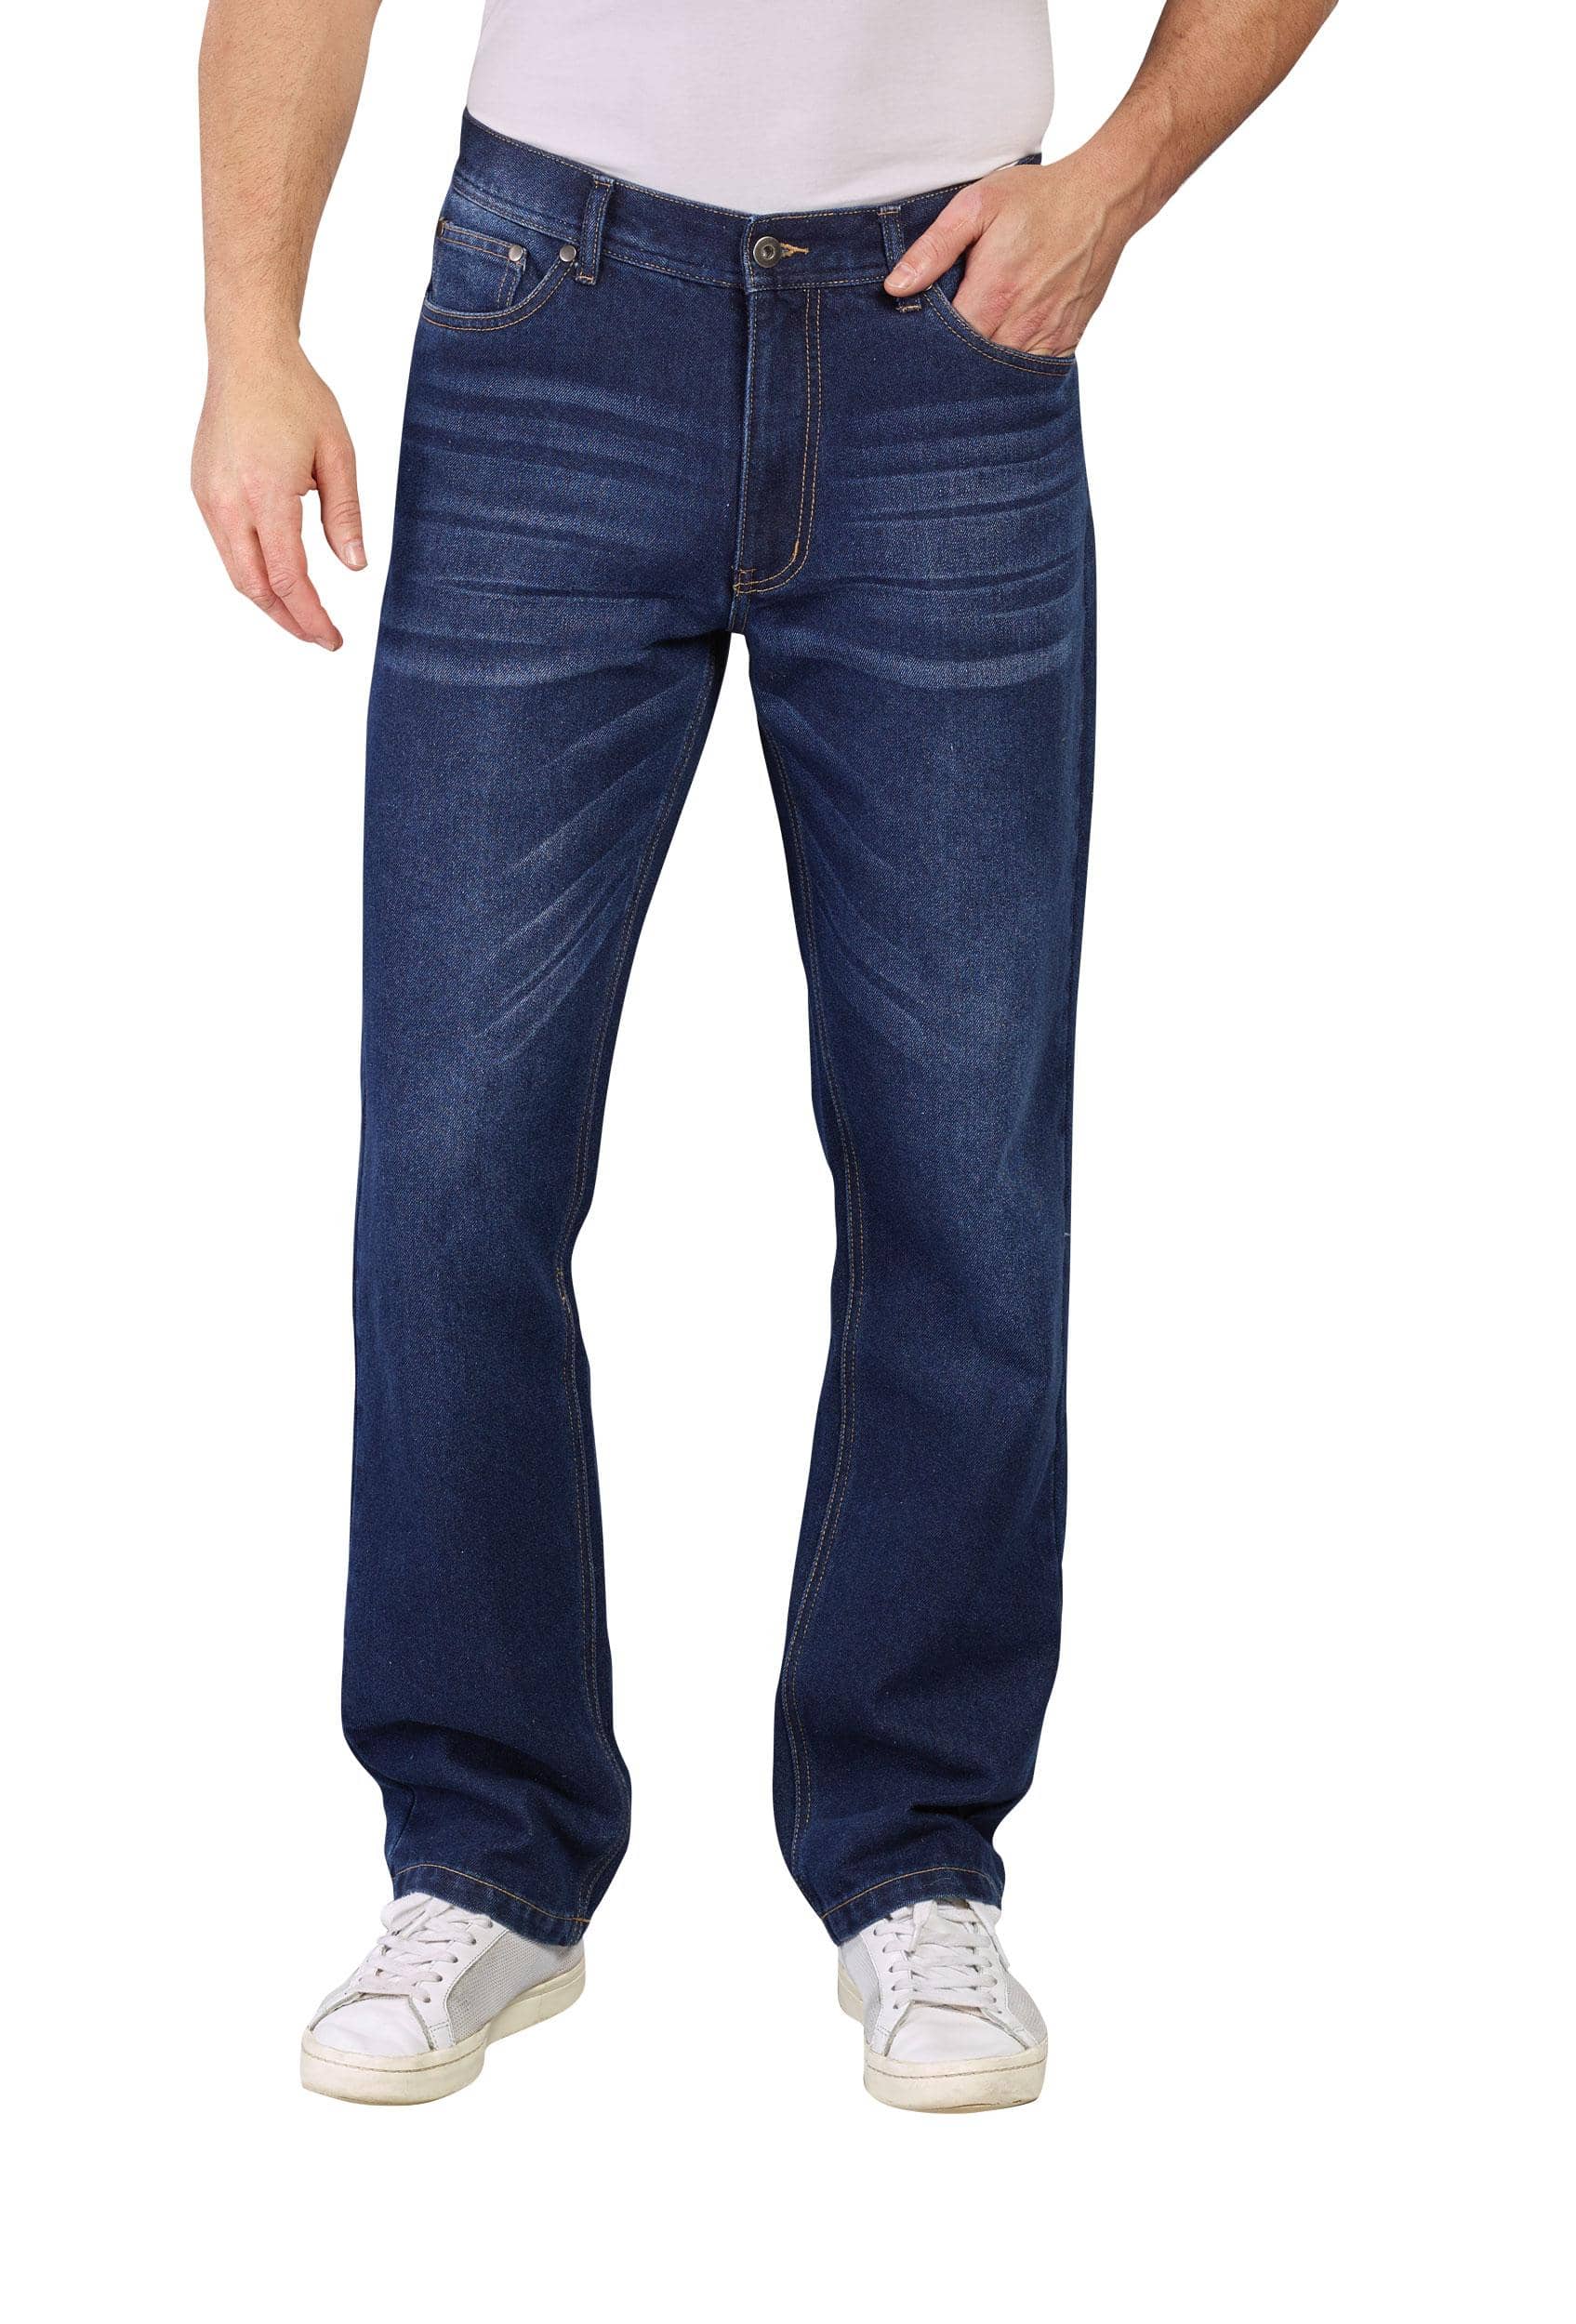 BEN BRIX Jeans mit etwas weiterem Oberschenkel und regulärer Leibhöhe, Farbe bluestone